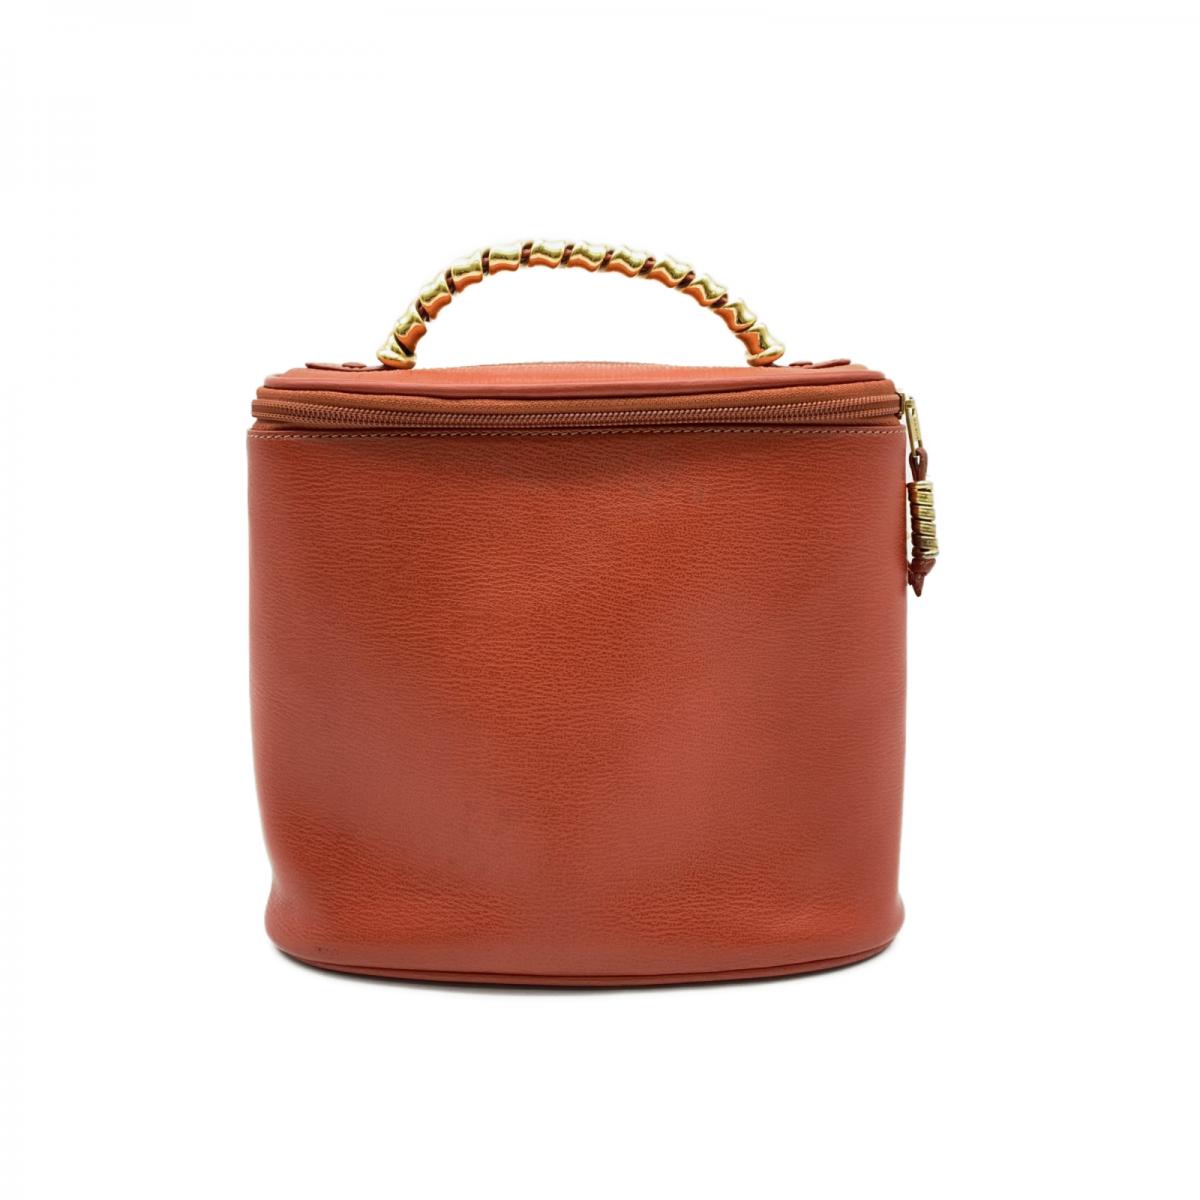 Velazquez Leather Cosmetic Handbag